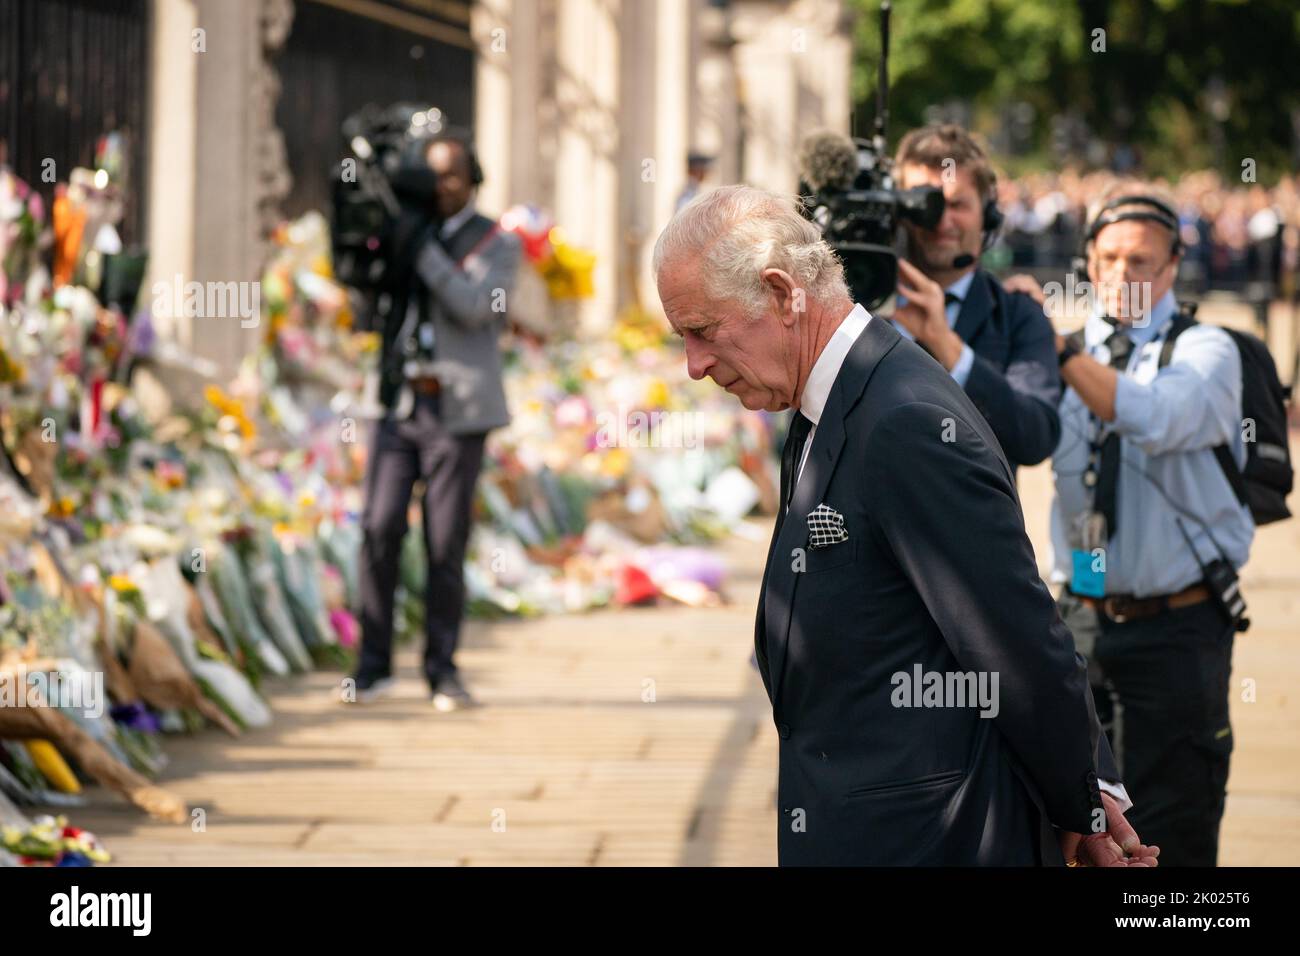 König Charles III. Sieht Blumen vor dem Buckingham Palace in London, nachdem er nach dem Tod von Königin Elizabeth II. Am Donnerstag von Balmoral aus gereist ist. Bilddatum: Freitag, 9. September 2022. Stockfoto